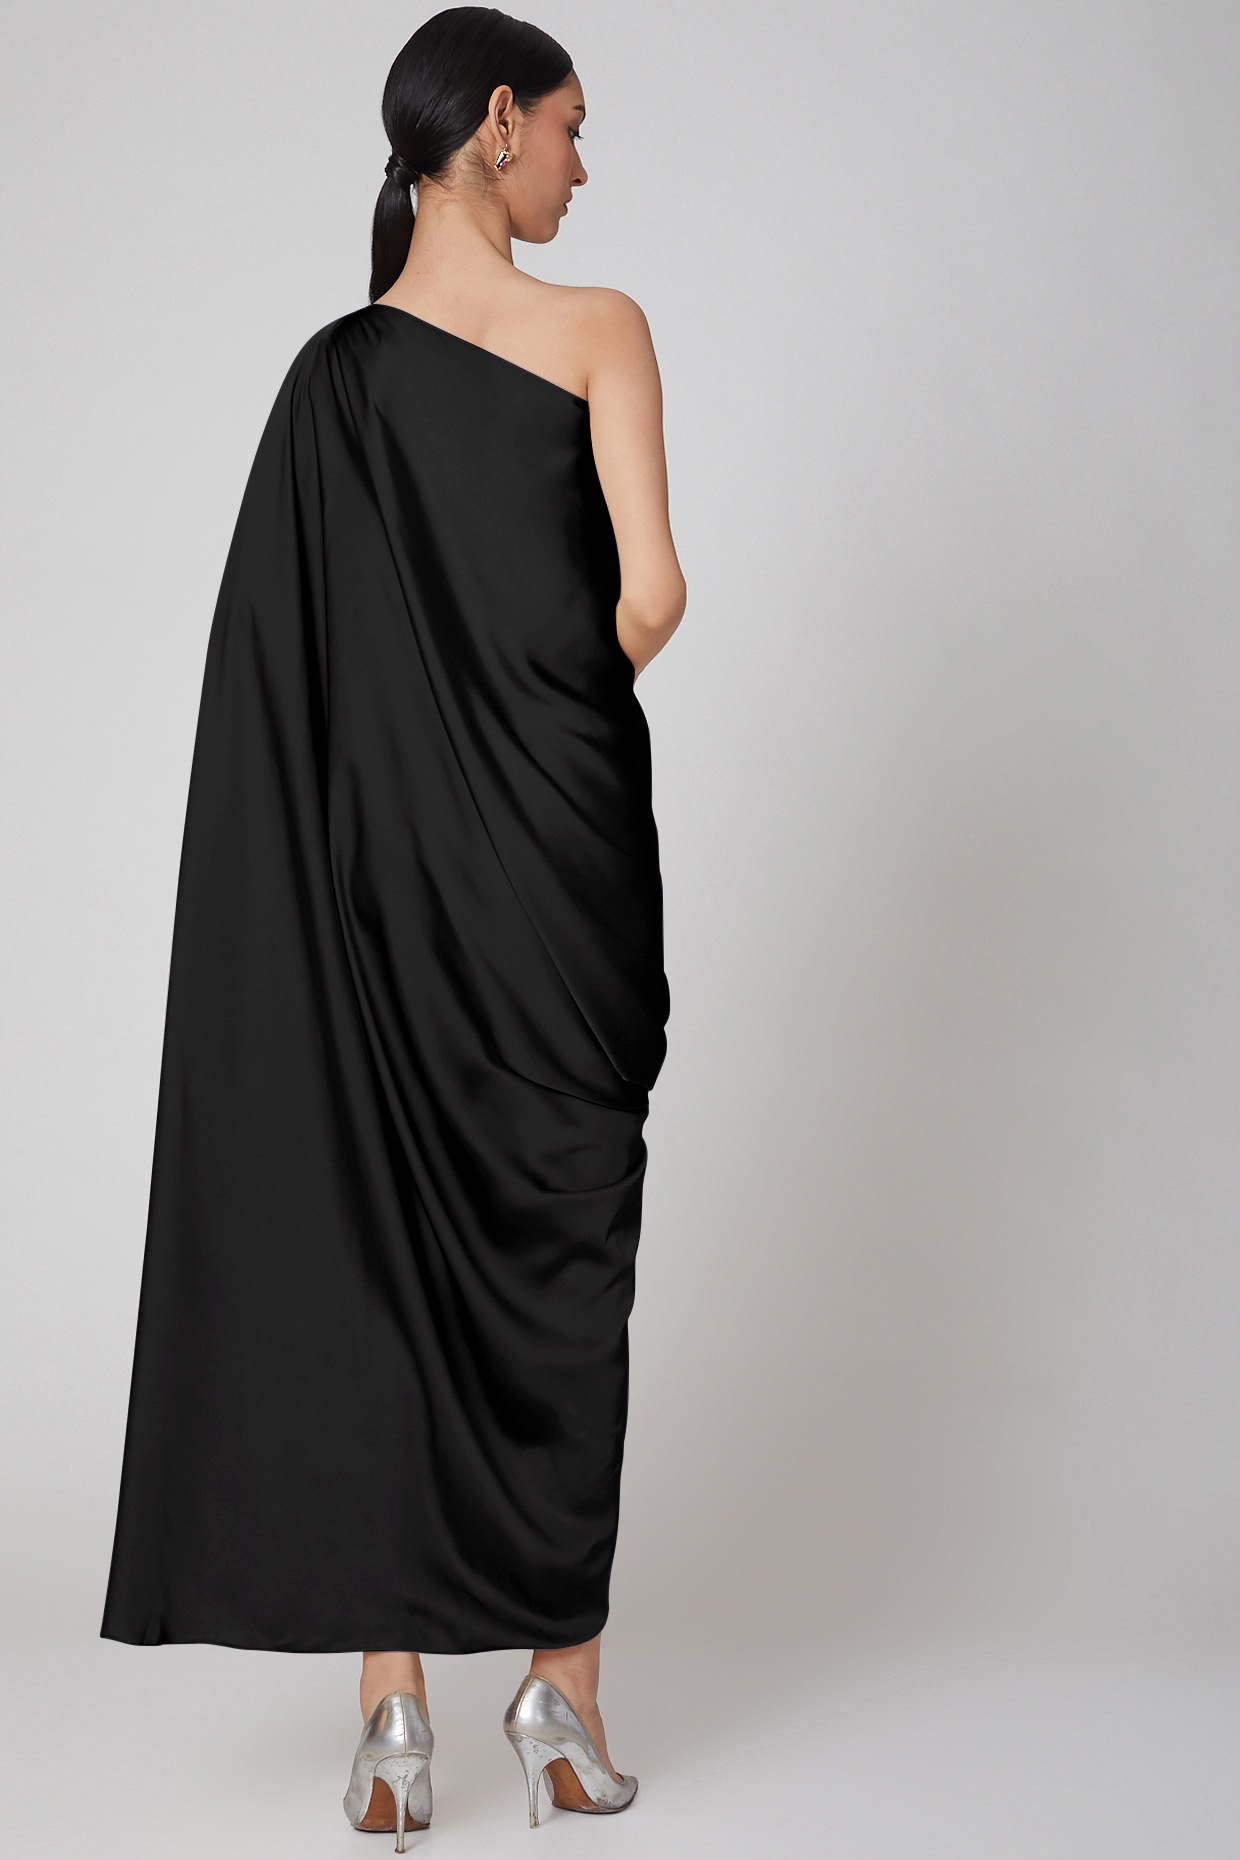 Black One Shoulder Draped Dress Design ...